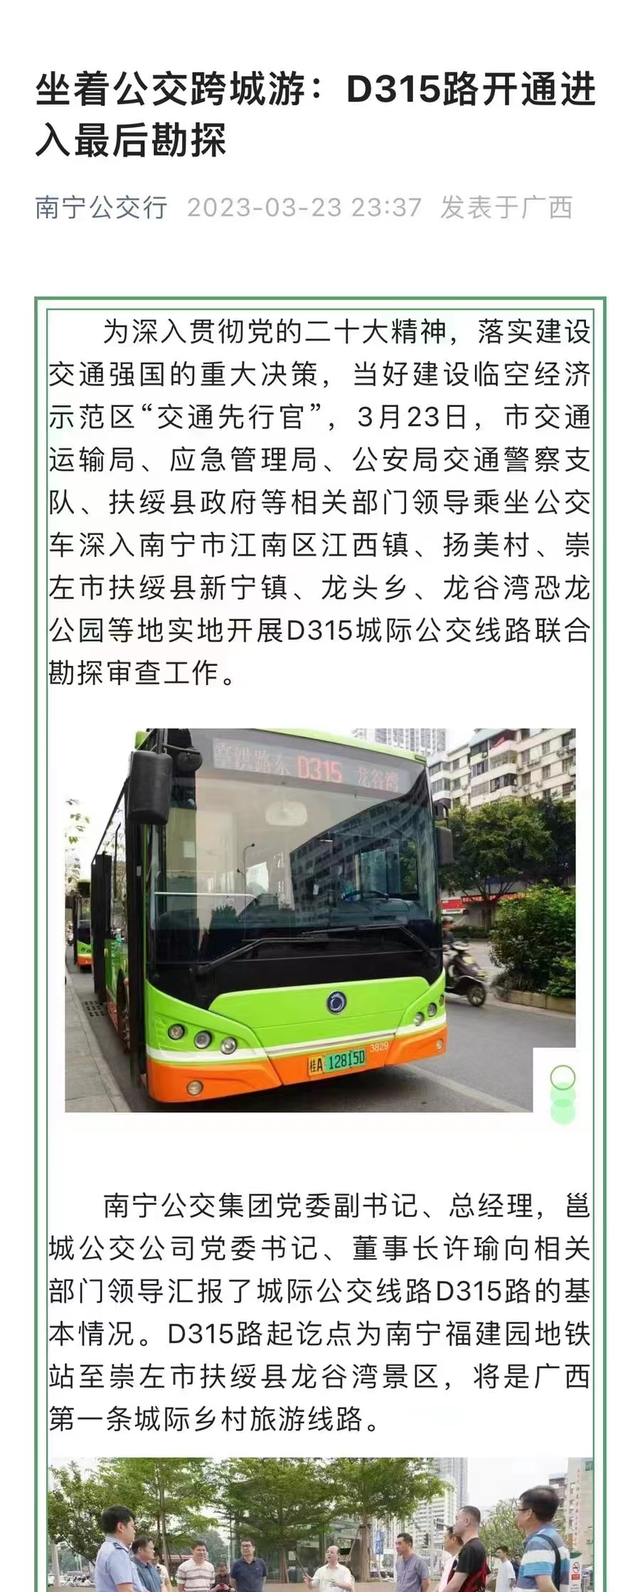 扶绥到南宁将开通公交车，将是广西第一条城际乡村旅游线路。